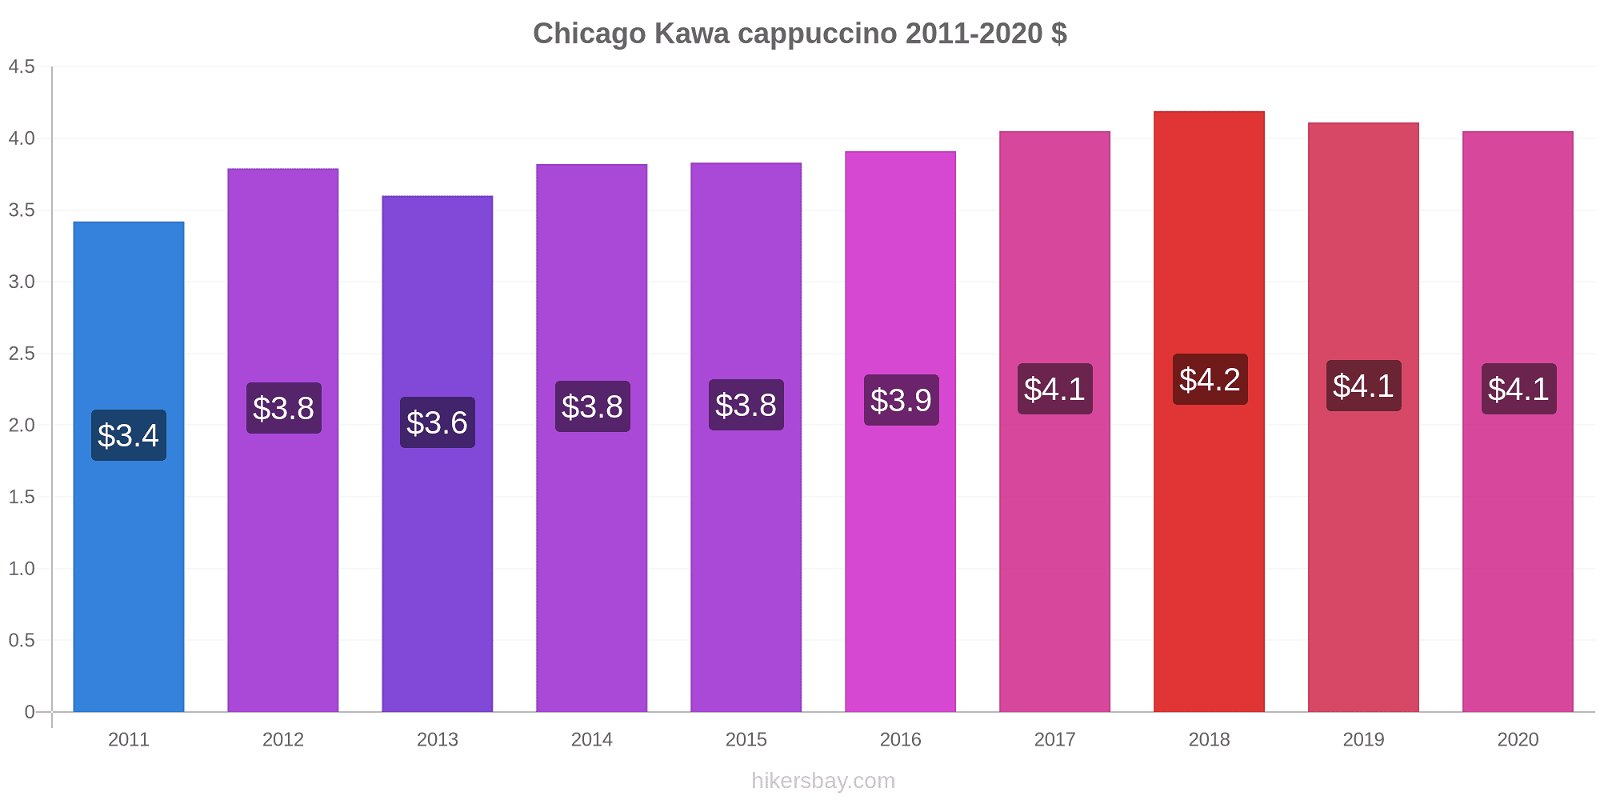 Chicago zmiany cen Kawa cappuccino hikersbay.com